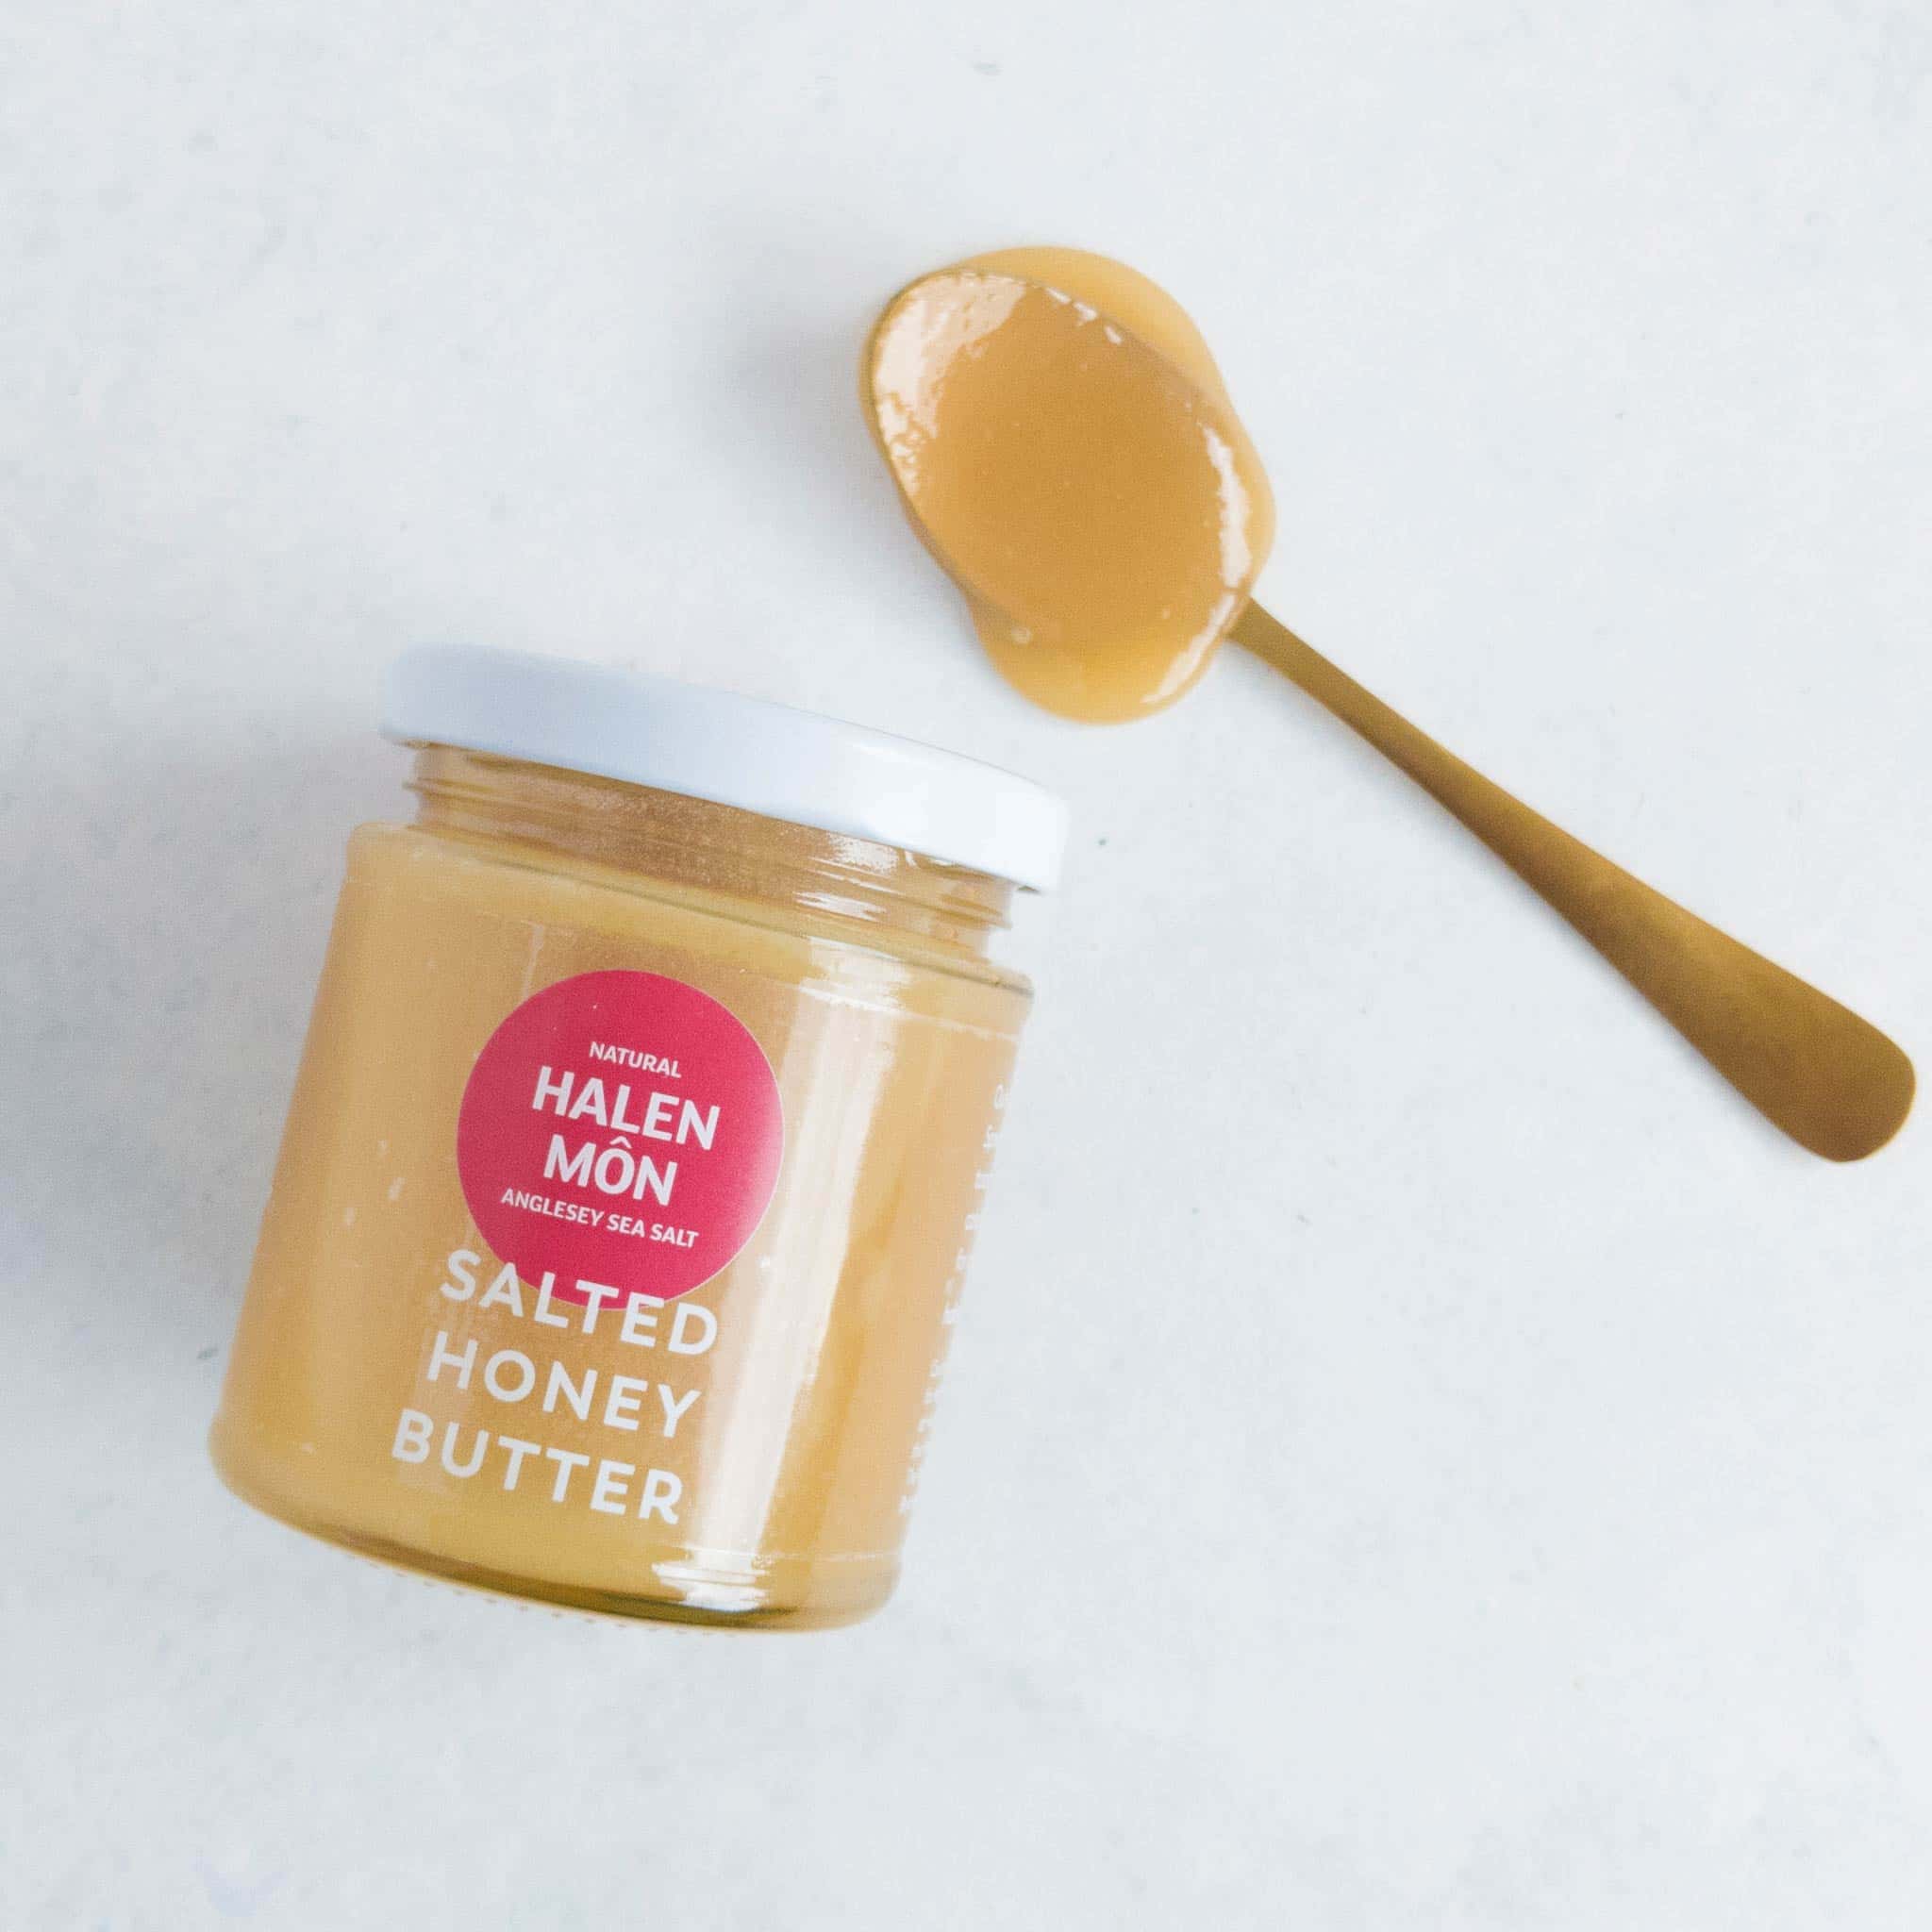 Halen Môn Salted Butter Honey 225g